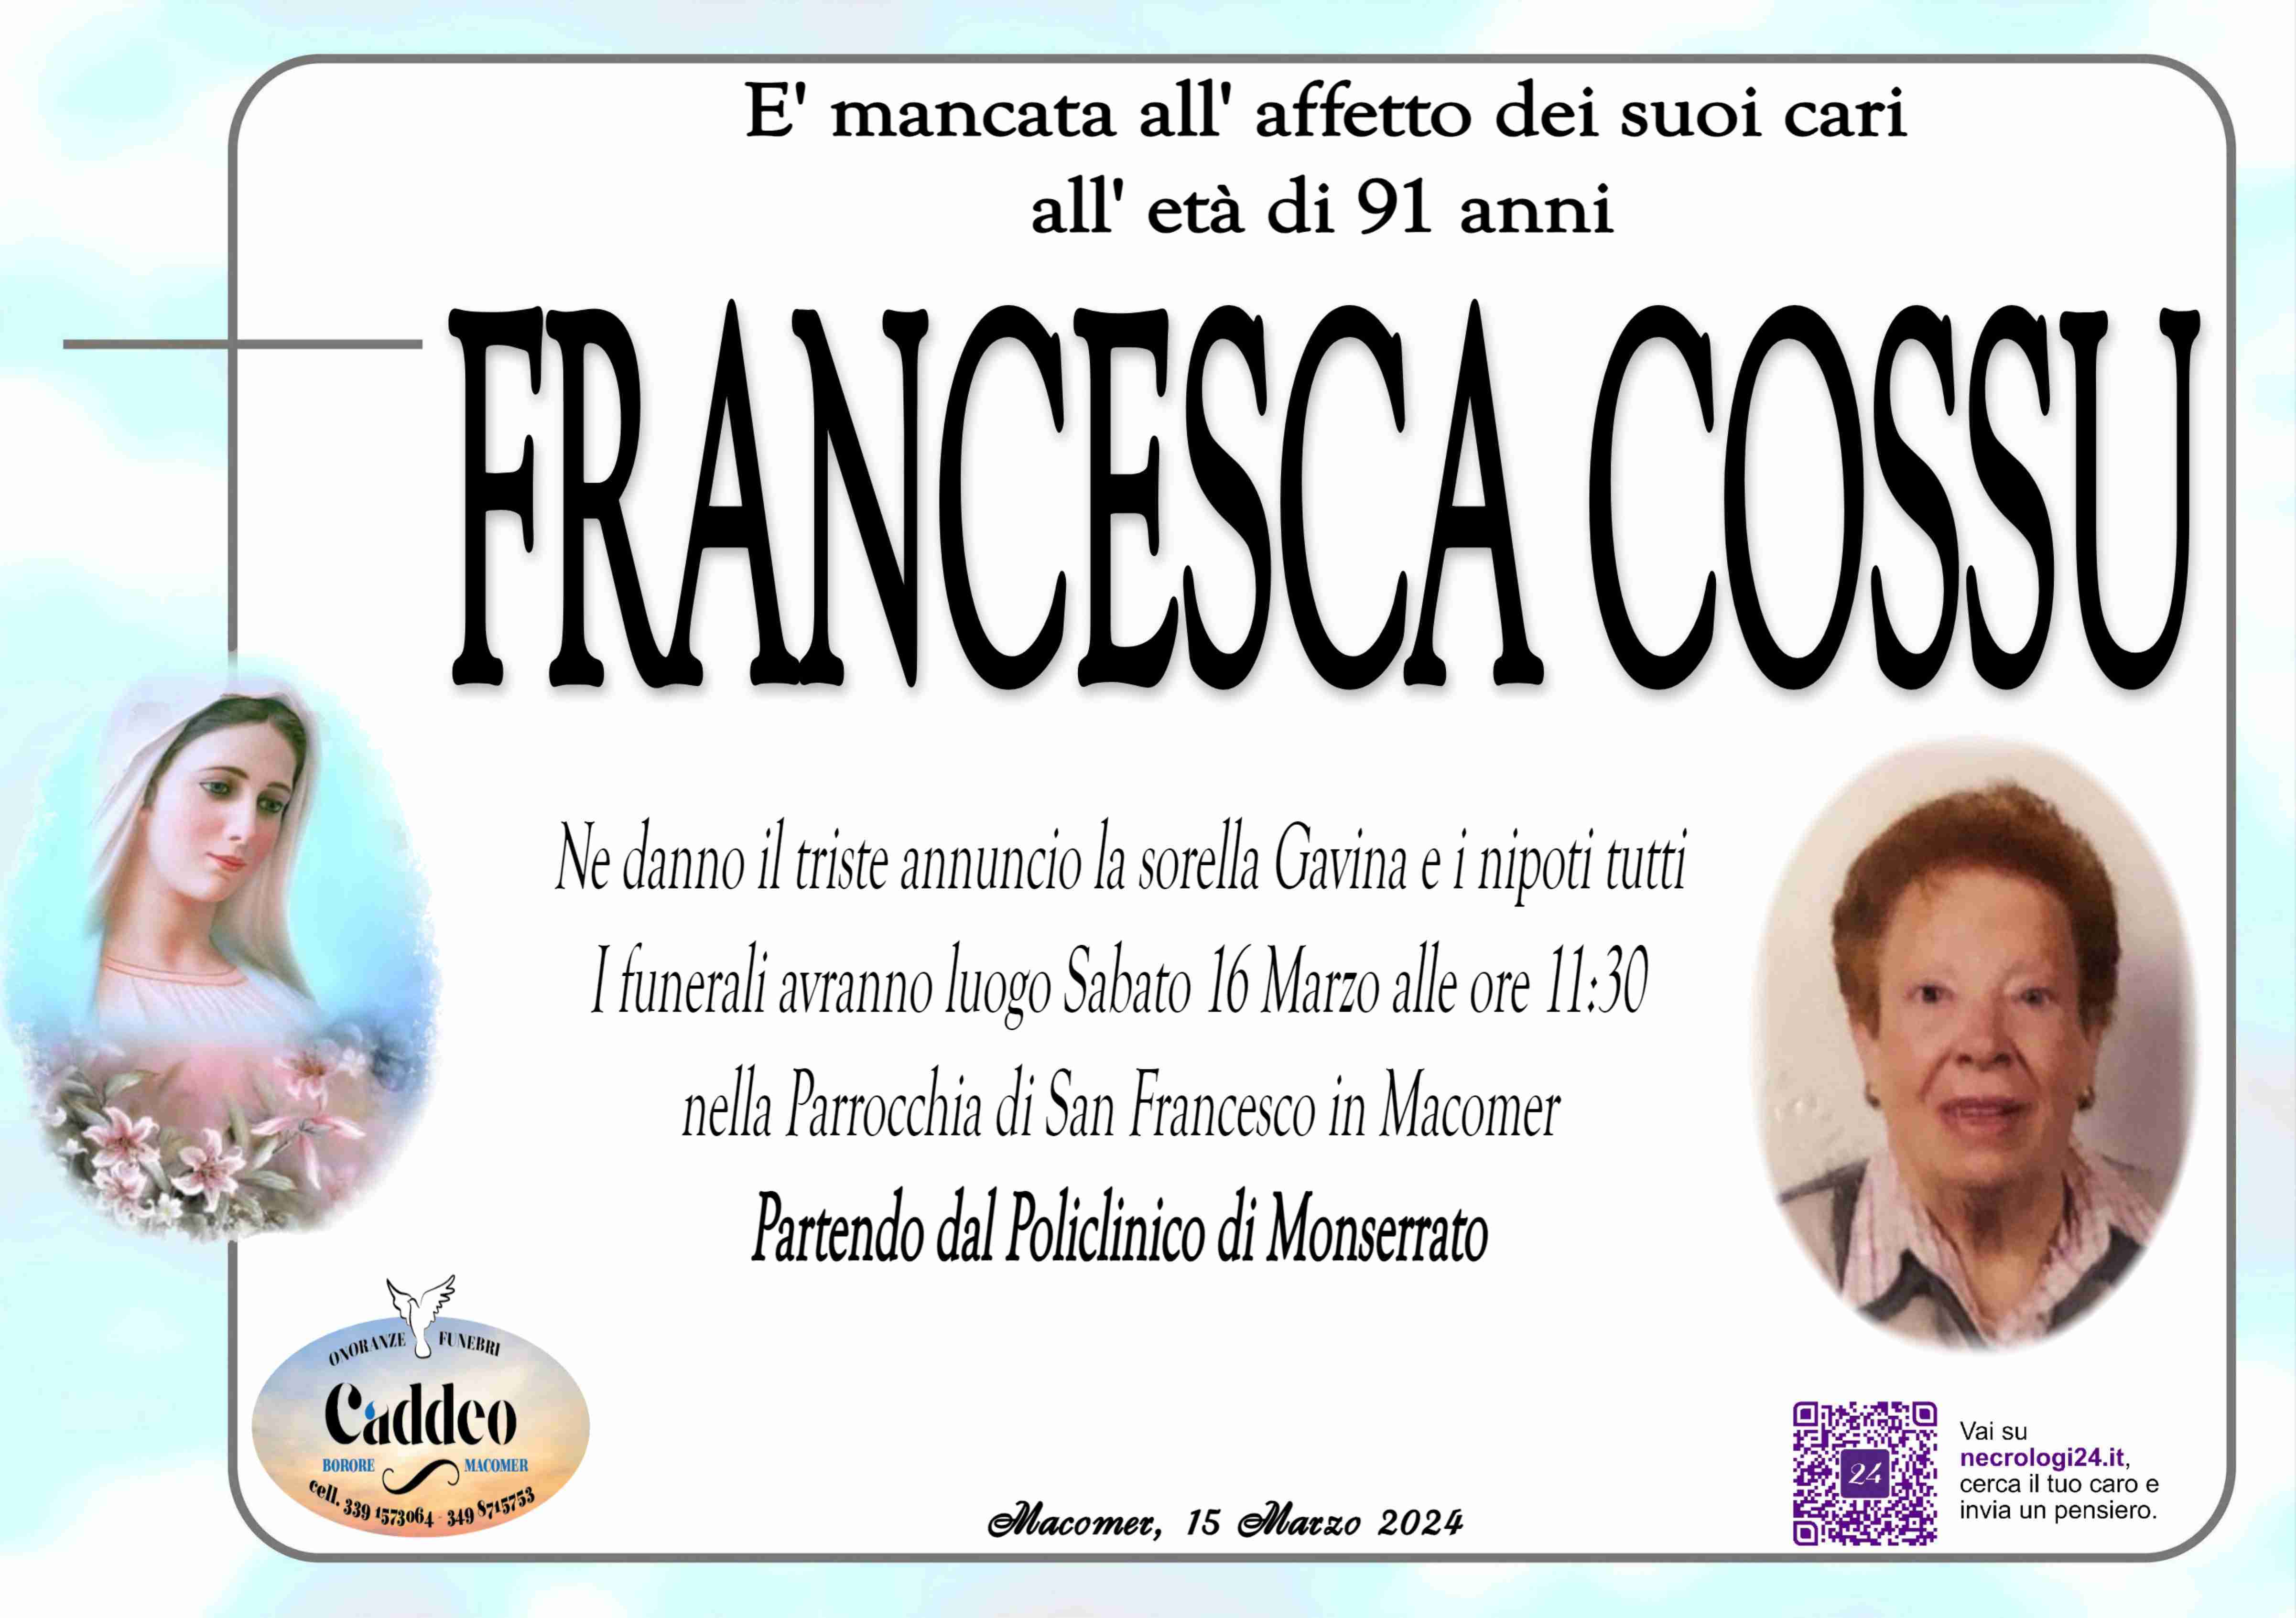 Francesca Cossu